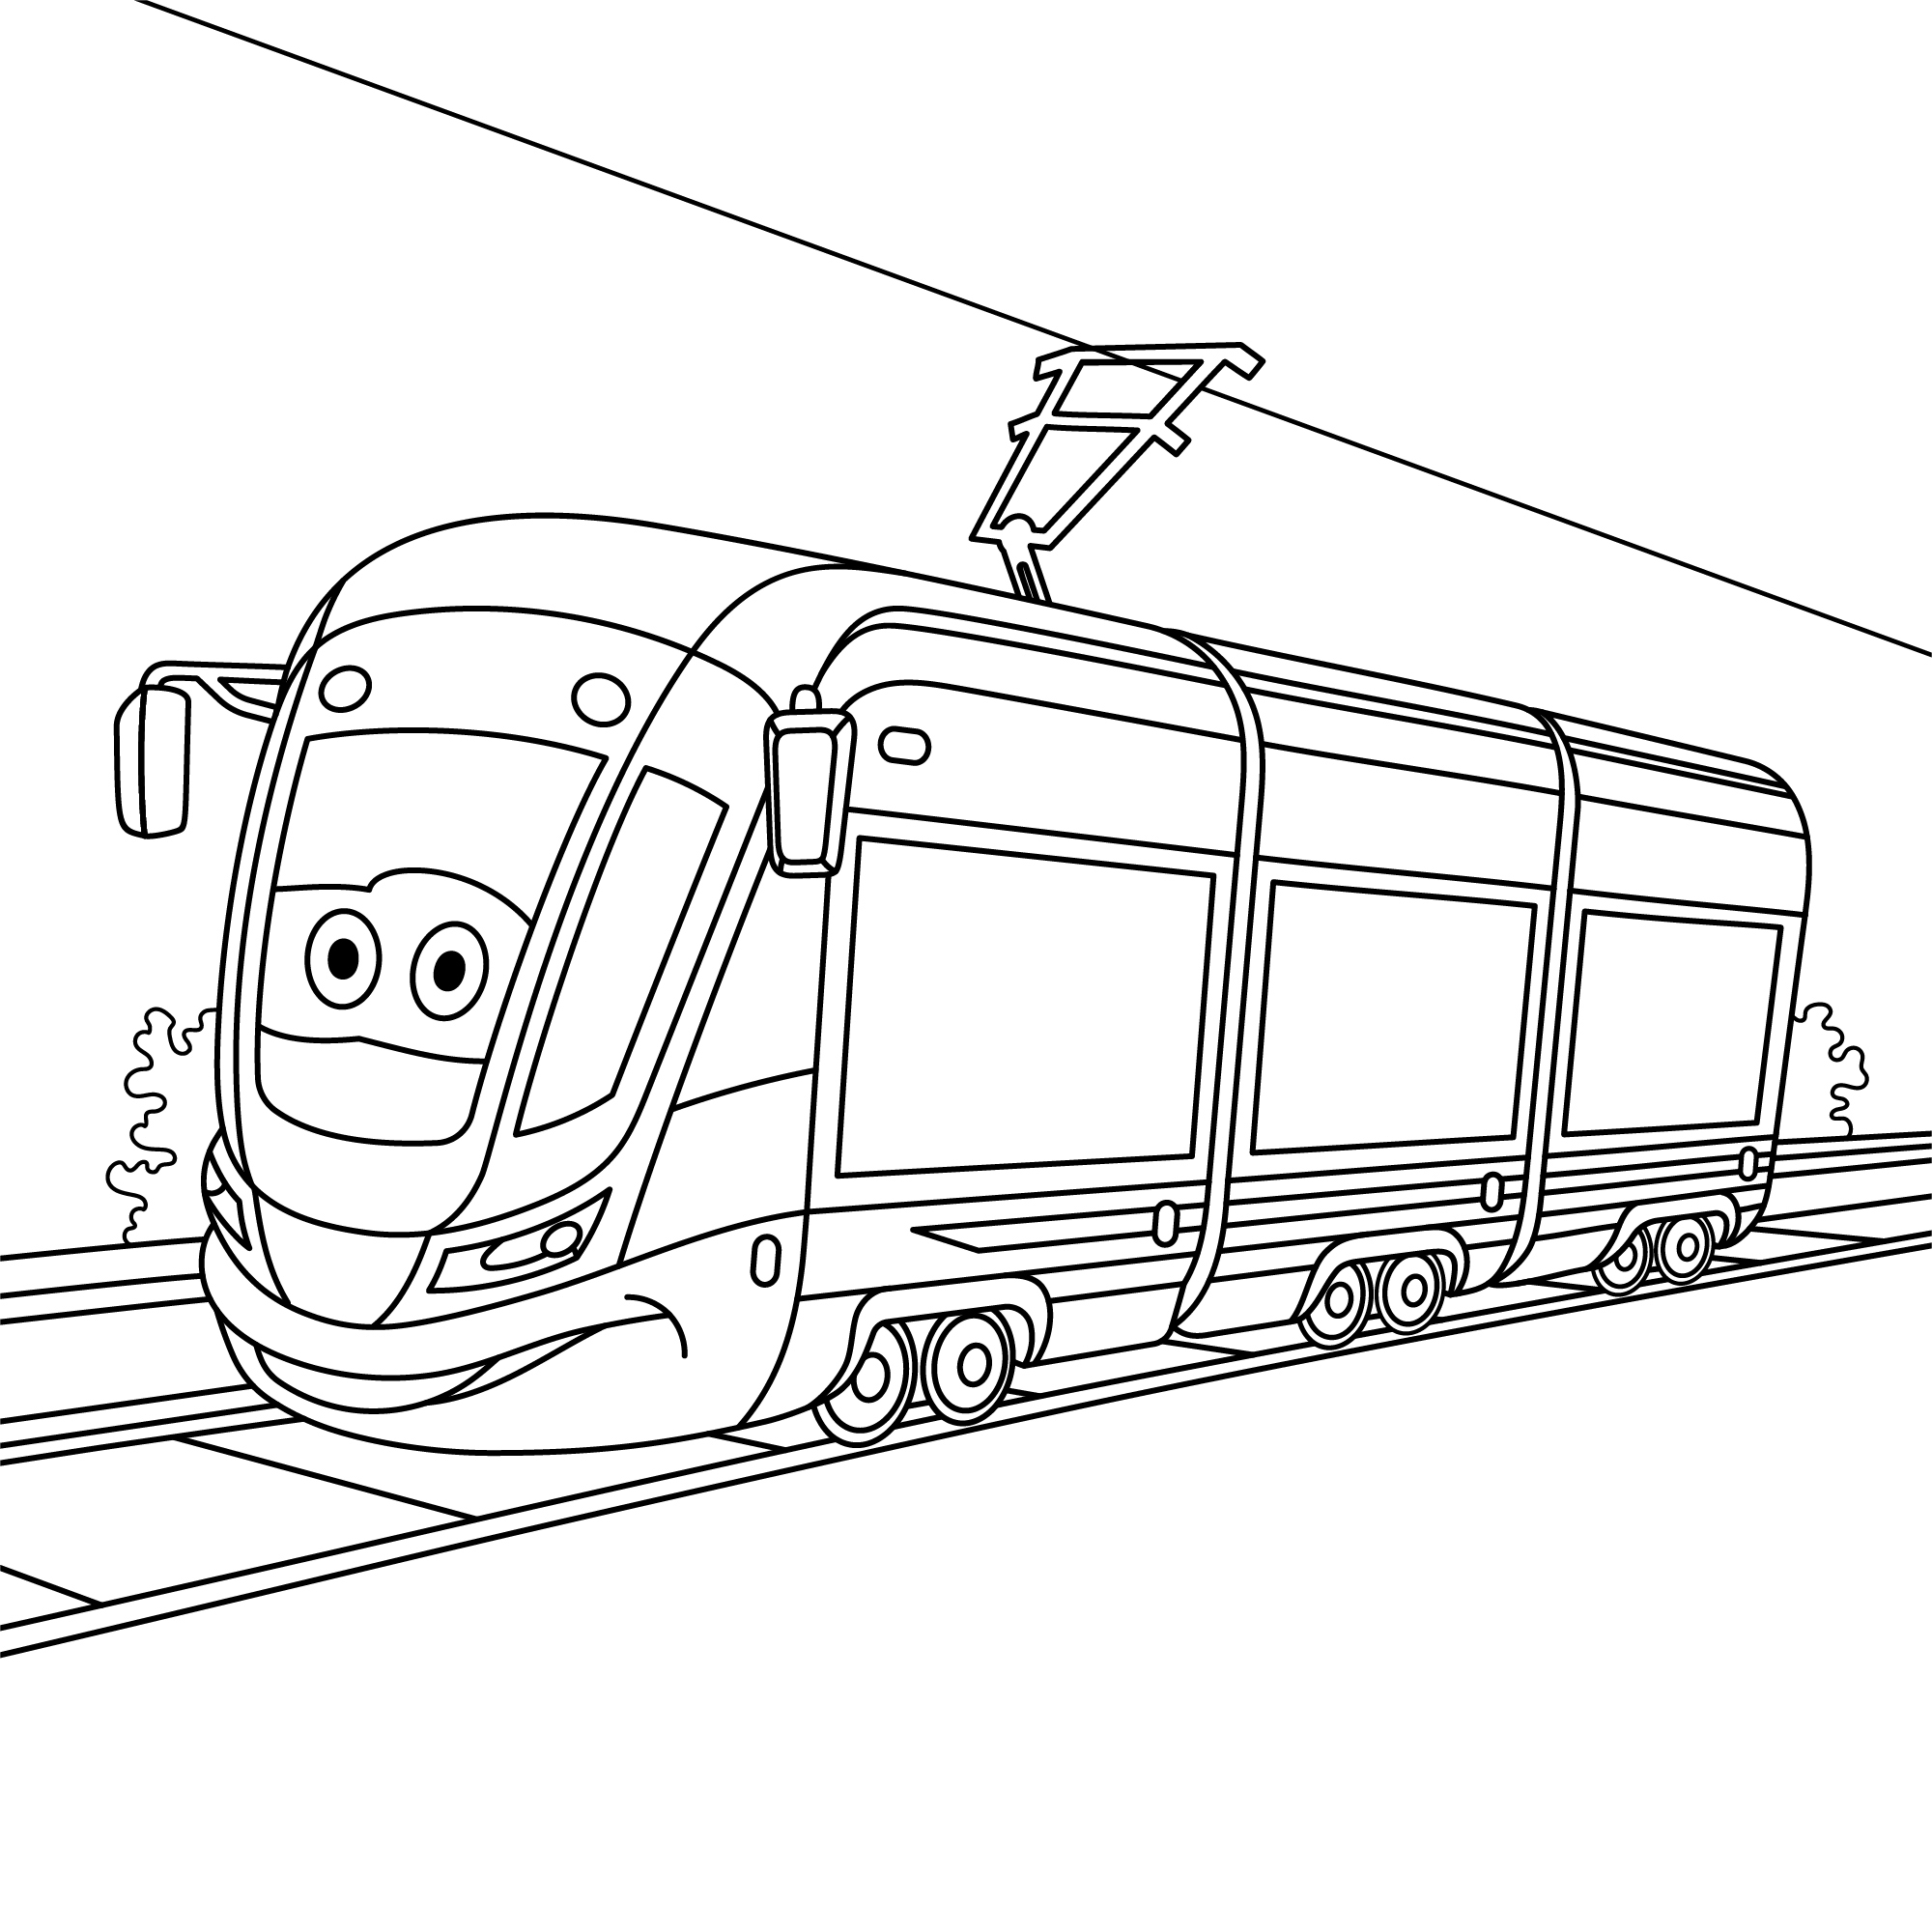 Раскраска игрушечный трамвай с лицом формата А4 в высоком качестве